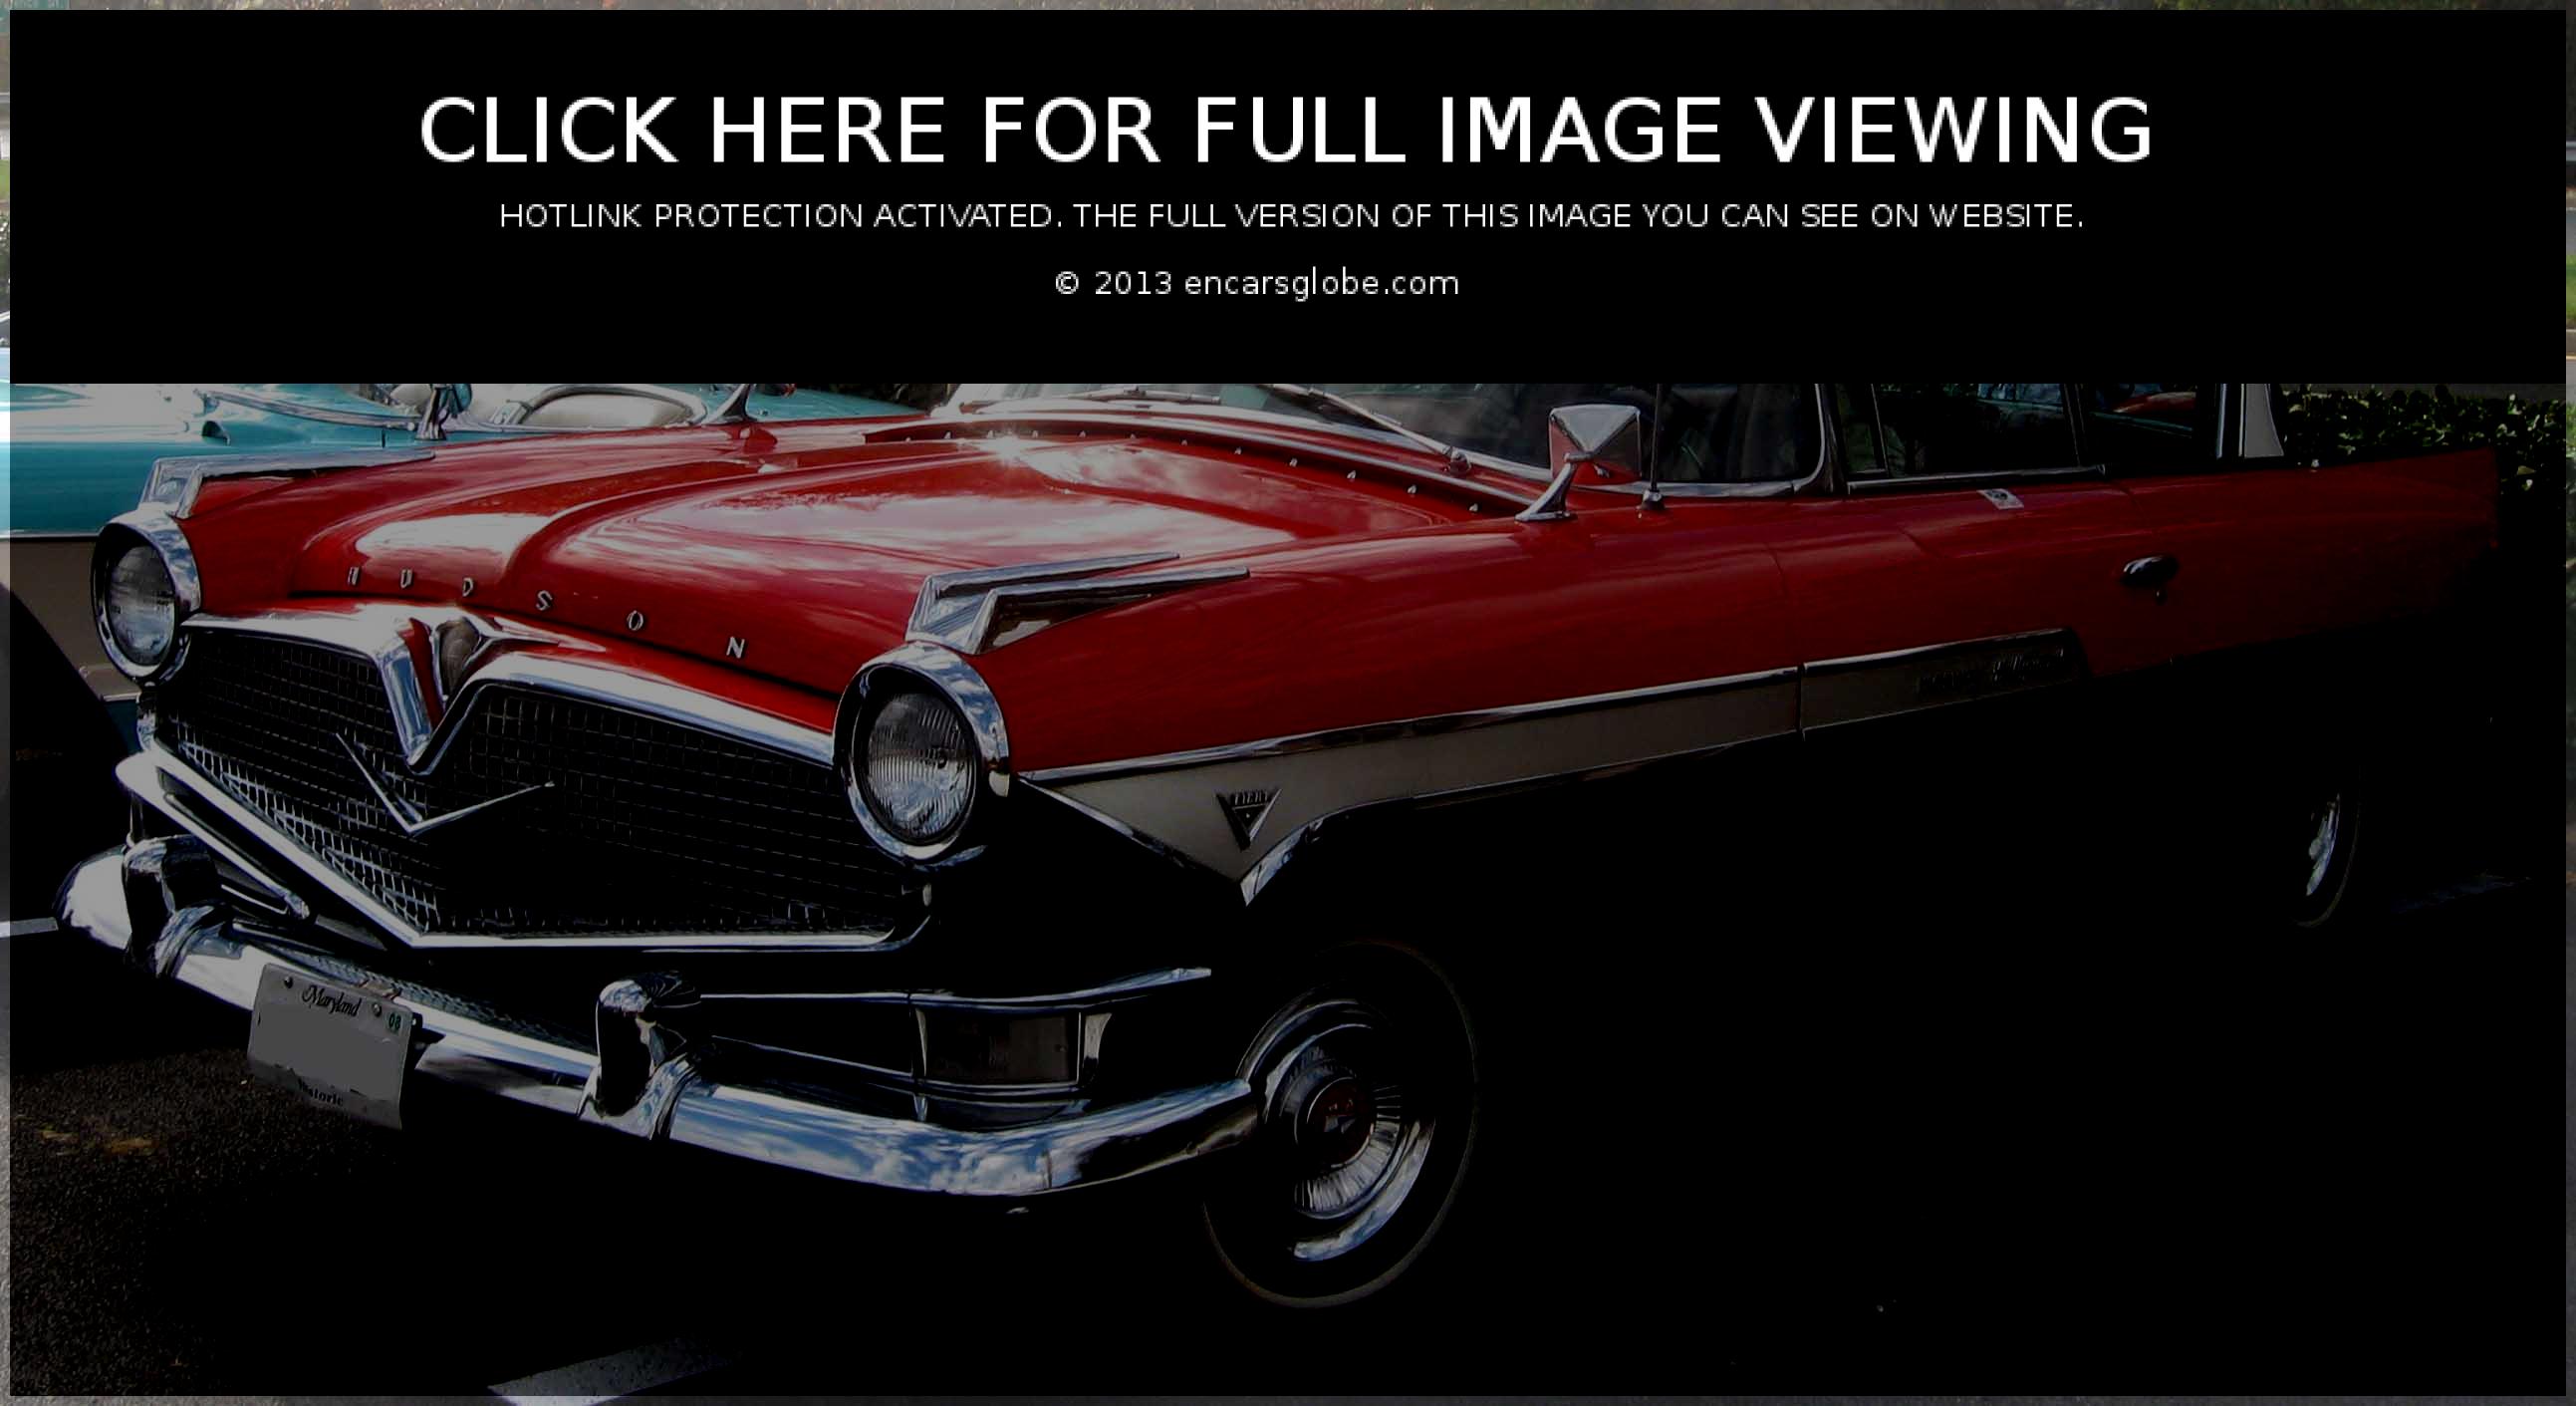 Galerie de photos Hudson Hornet Hollywood: Photo #07 sur 11, Image...